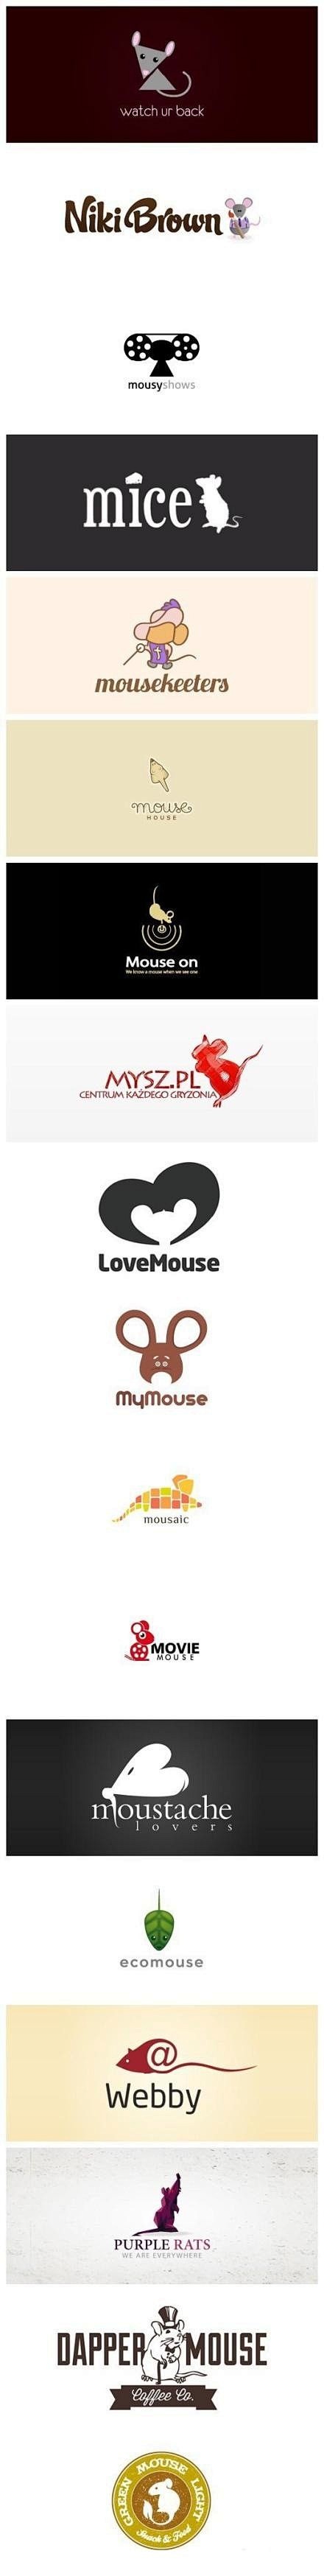 一组以老鼠为主题的创意Logo设计